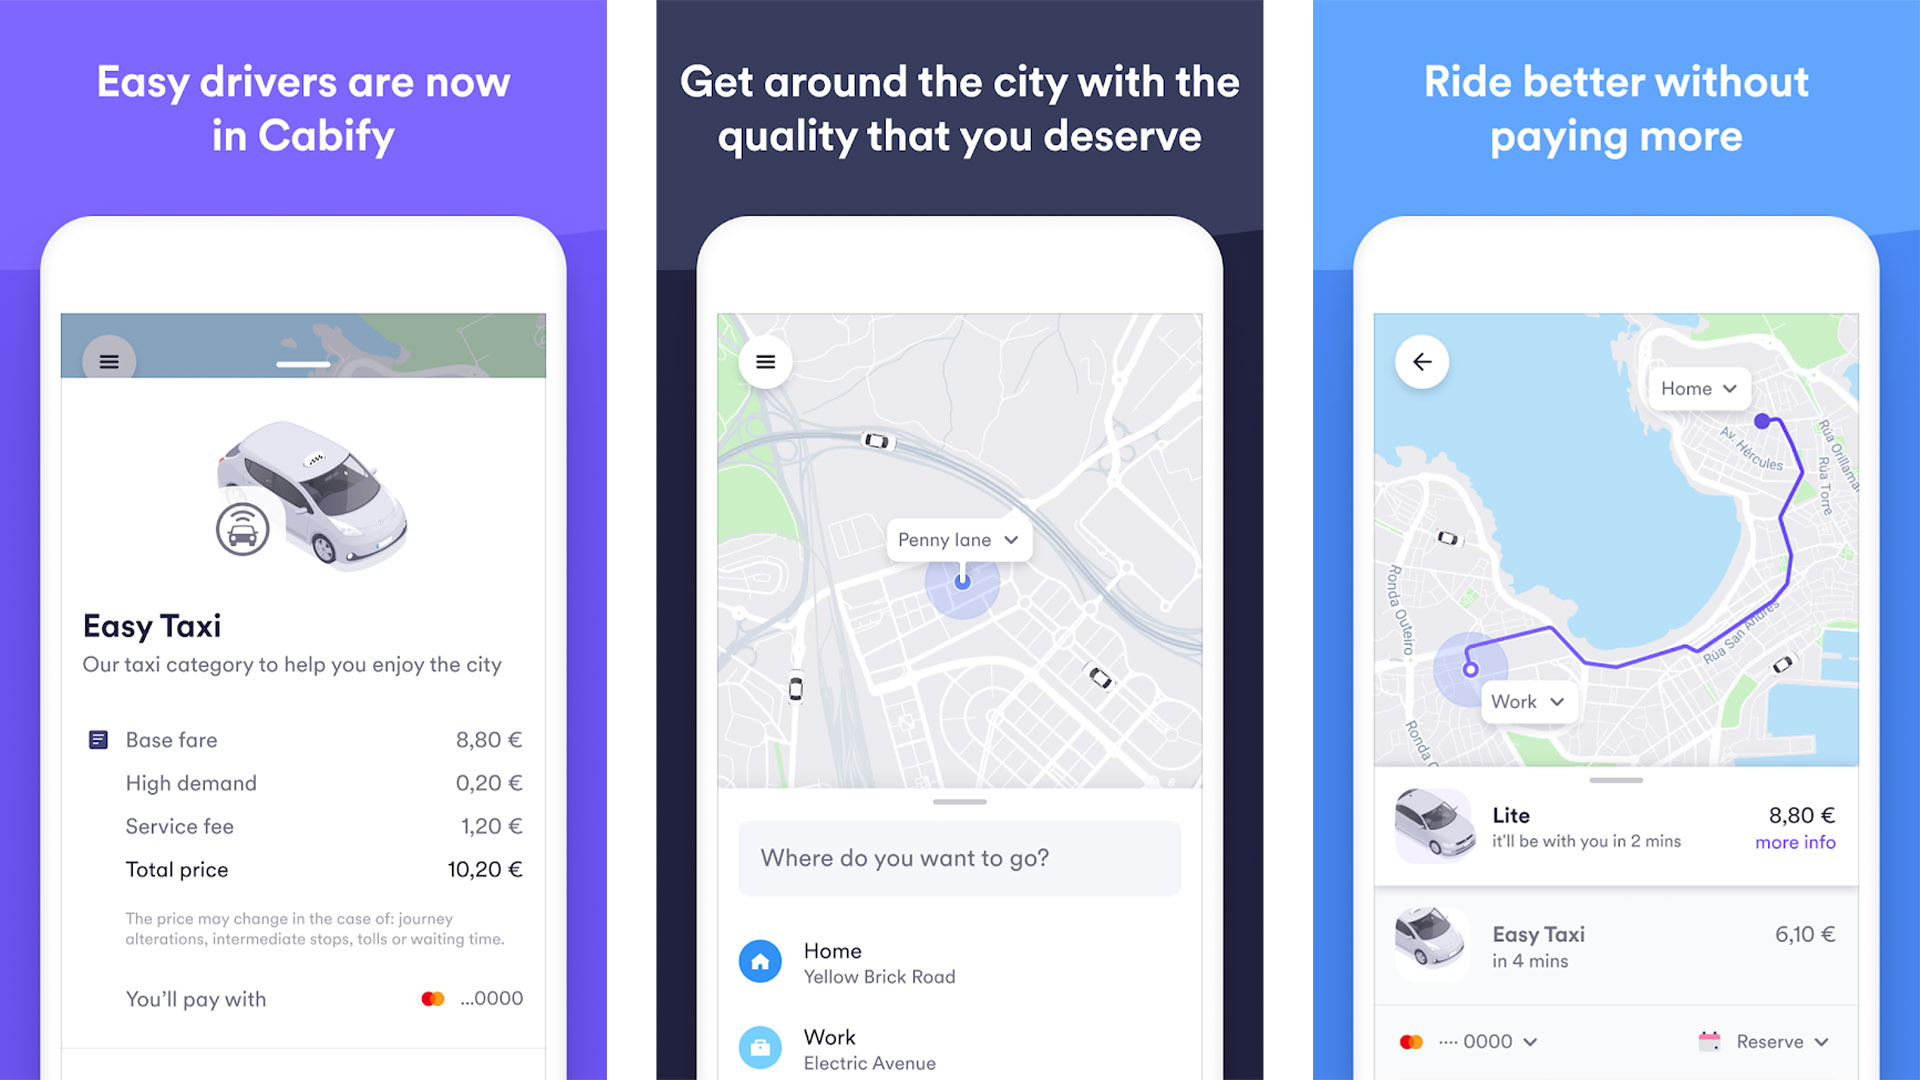 Easy Taxi de Cabify captura de pantalla 2020